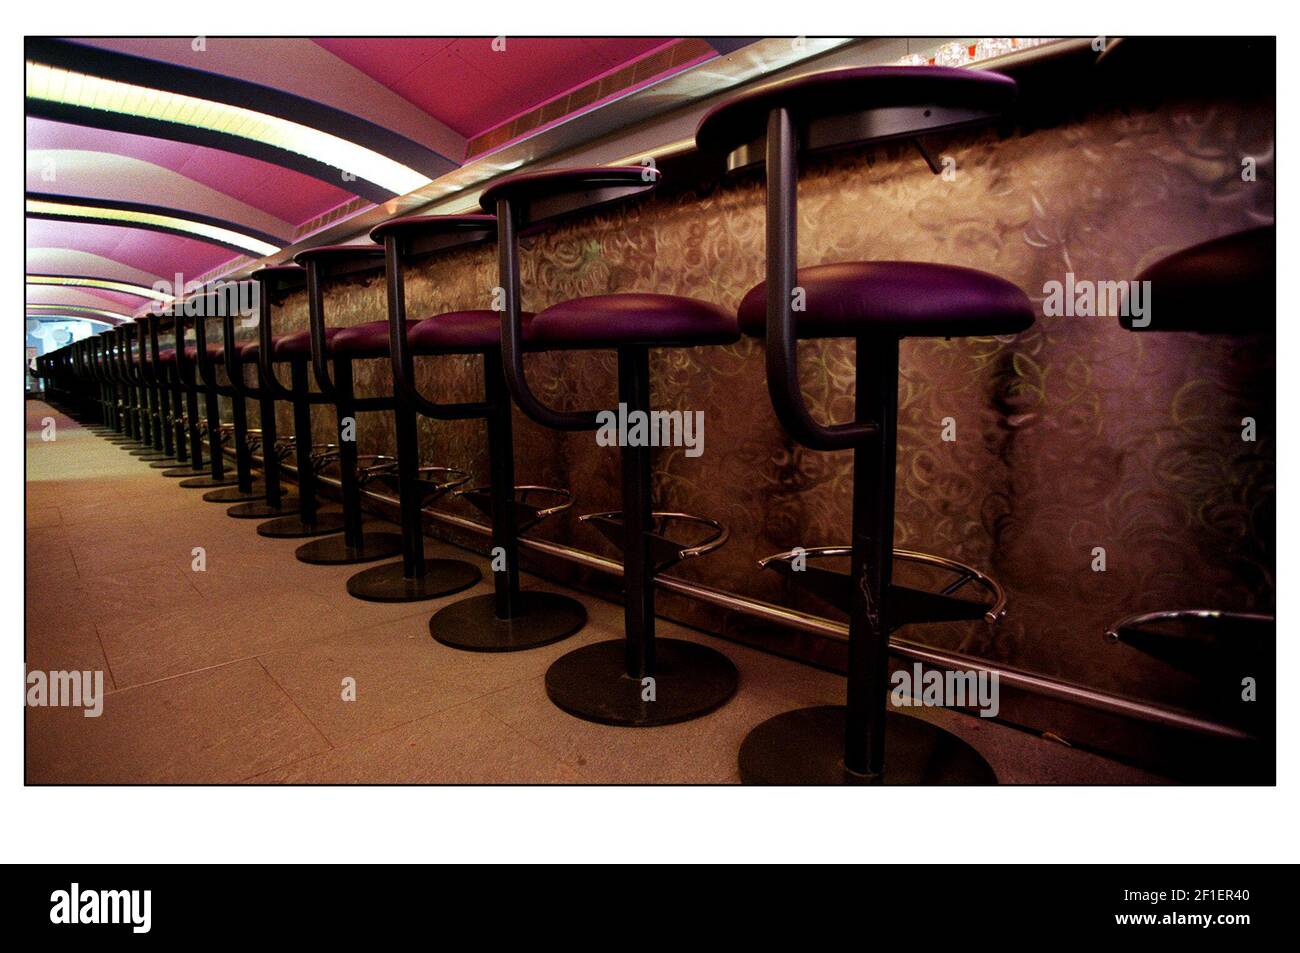 Zander apre un nuovo ristorante e bar a Londra. La barra può ospitare fino a 60 posti ed è dichiarata la più lunga d'Europa. Foto Stock